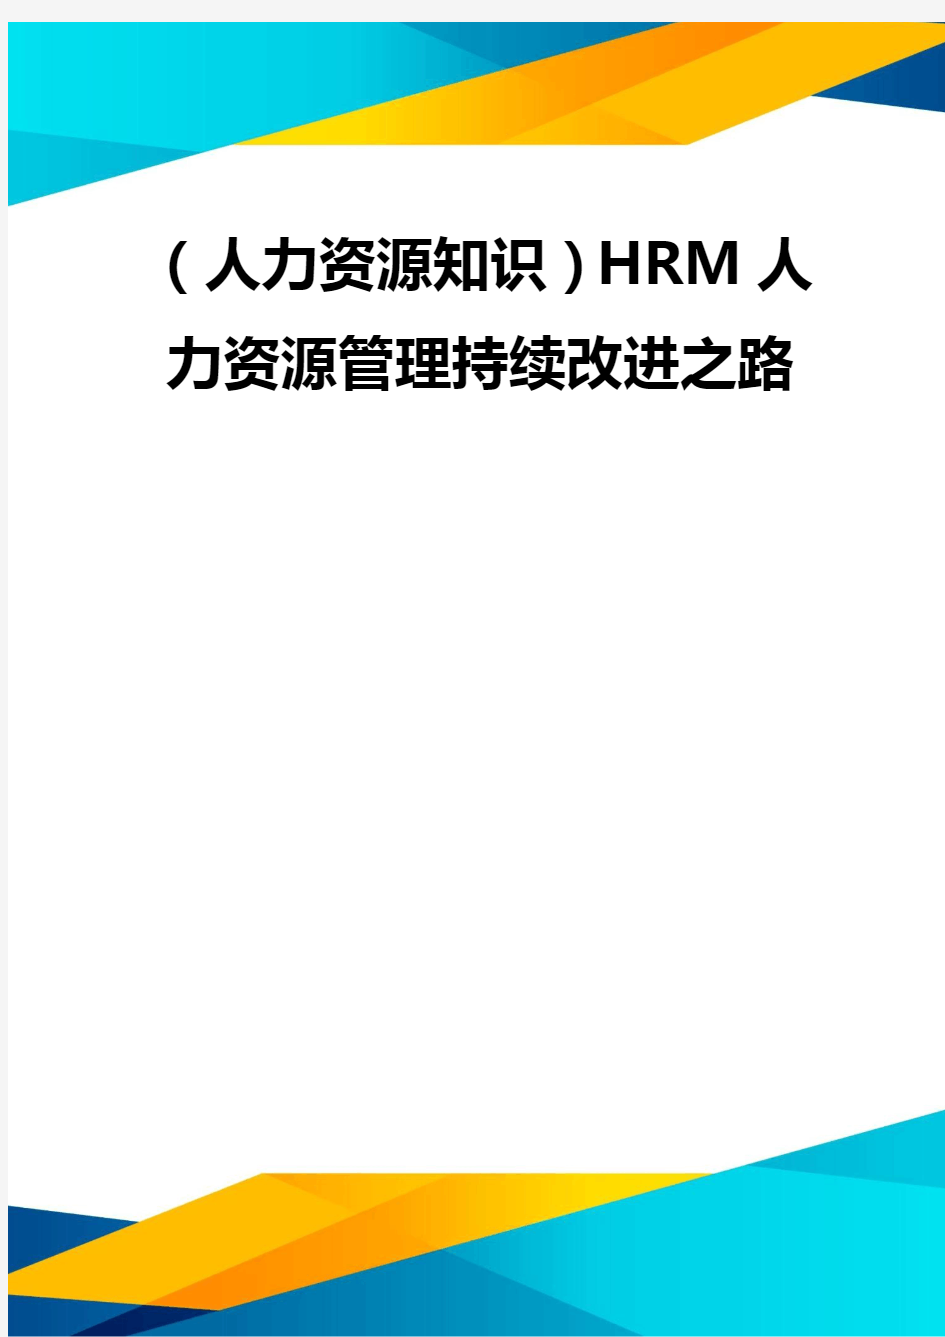 (优质)(人力资源知识)HRM人力资源管理持续改进之路